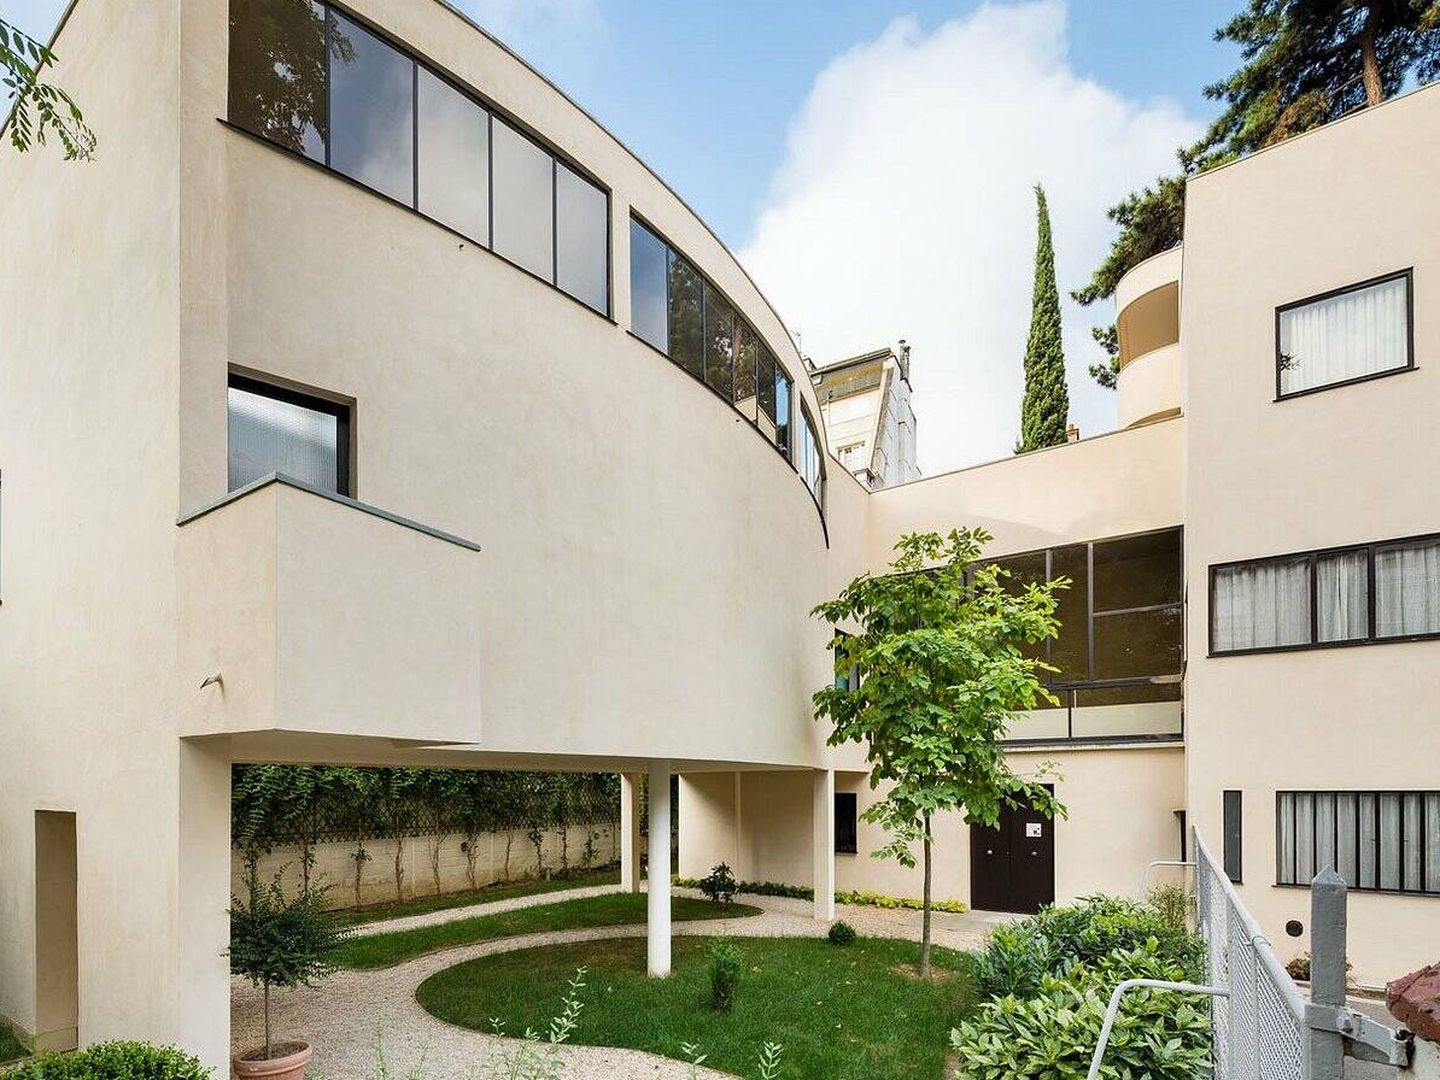 Exterior de la Maison La Roche, de Le Corbusier.